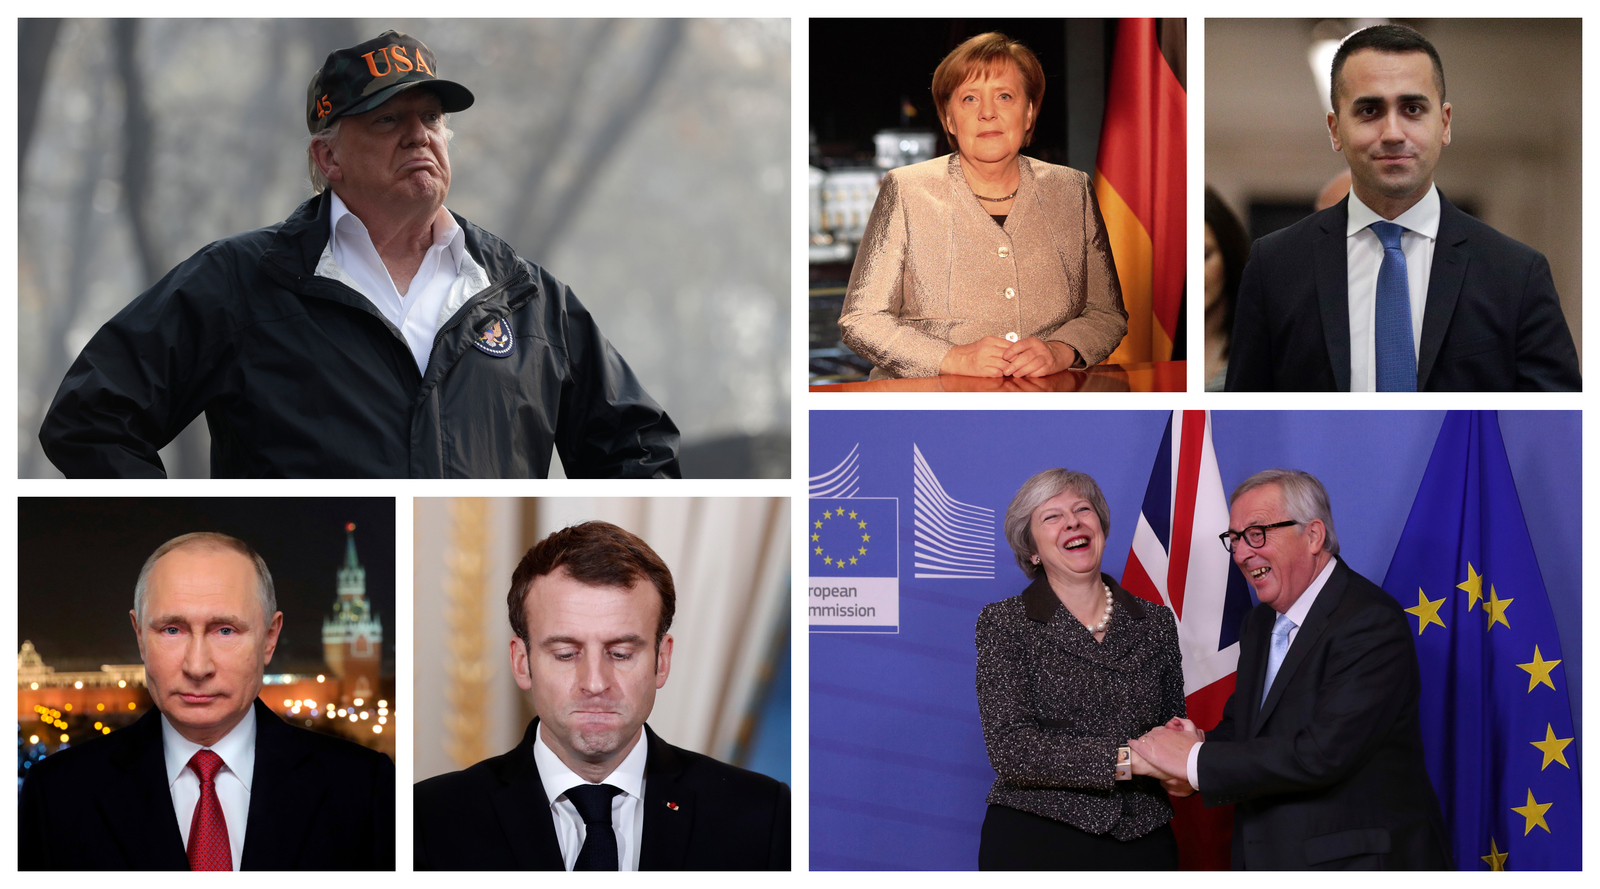 Los desafíos, un 2019 difícil para EU y Europa